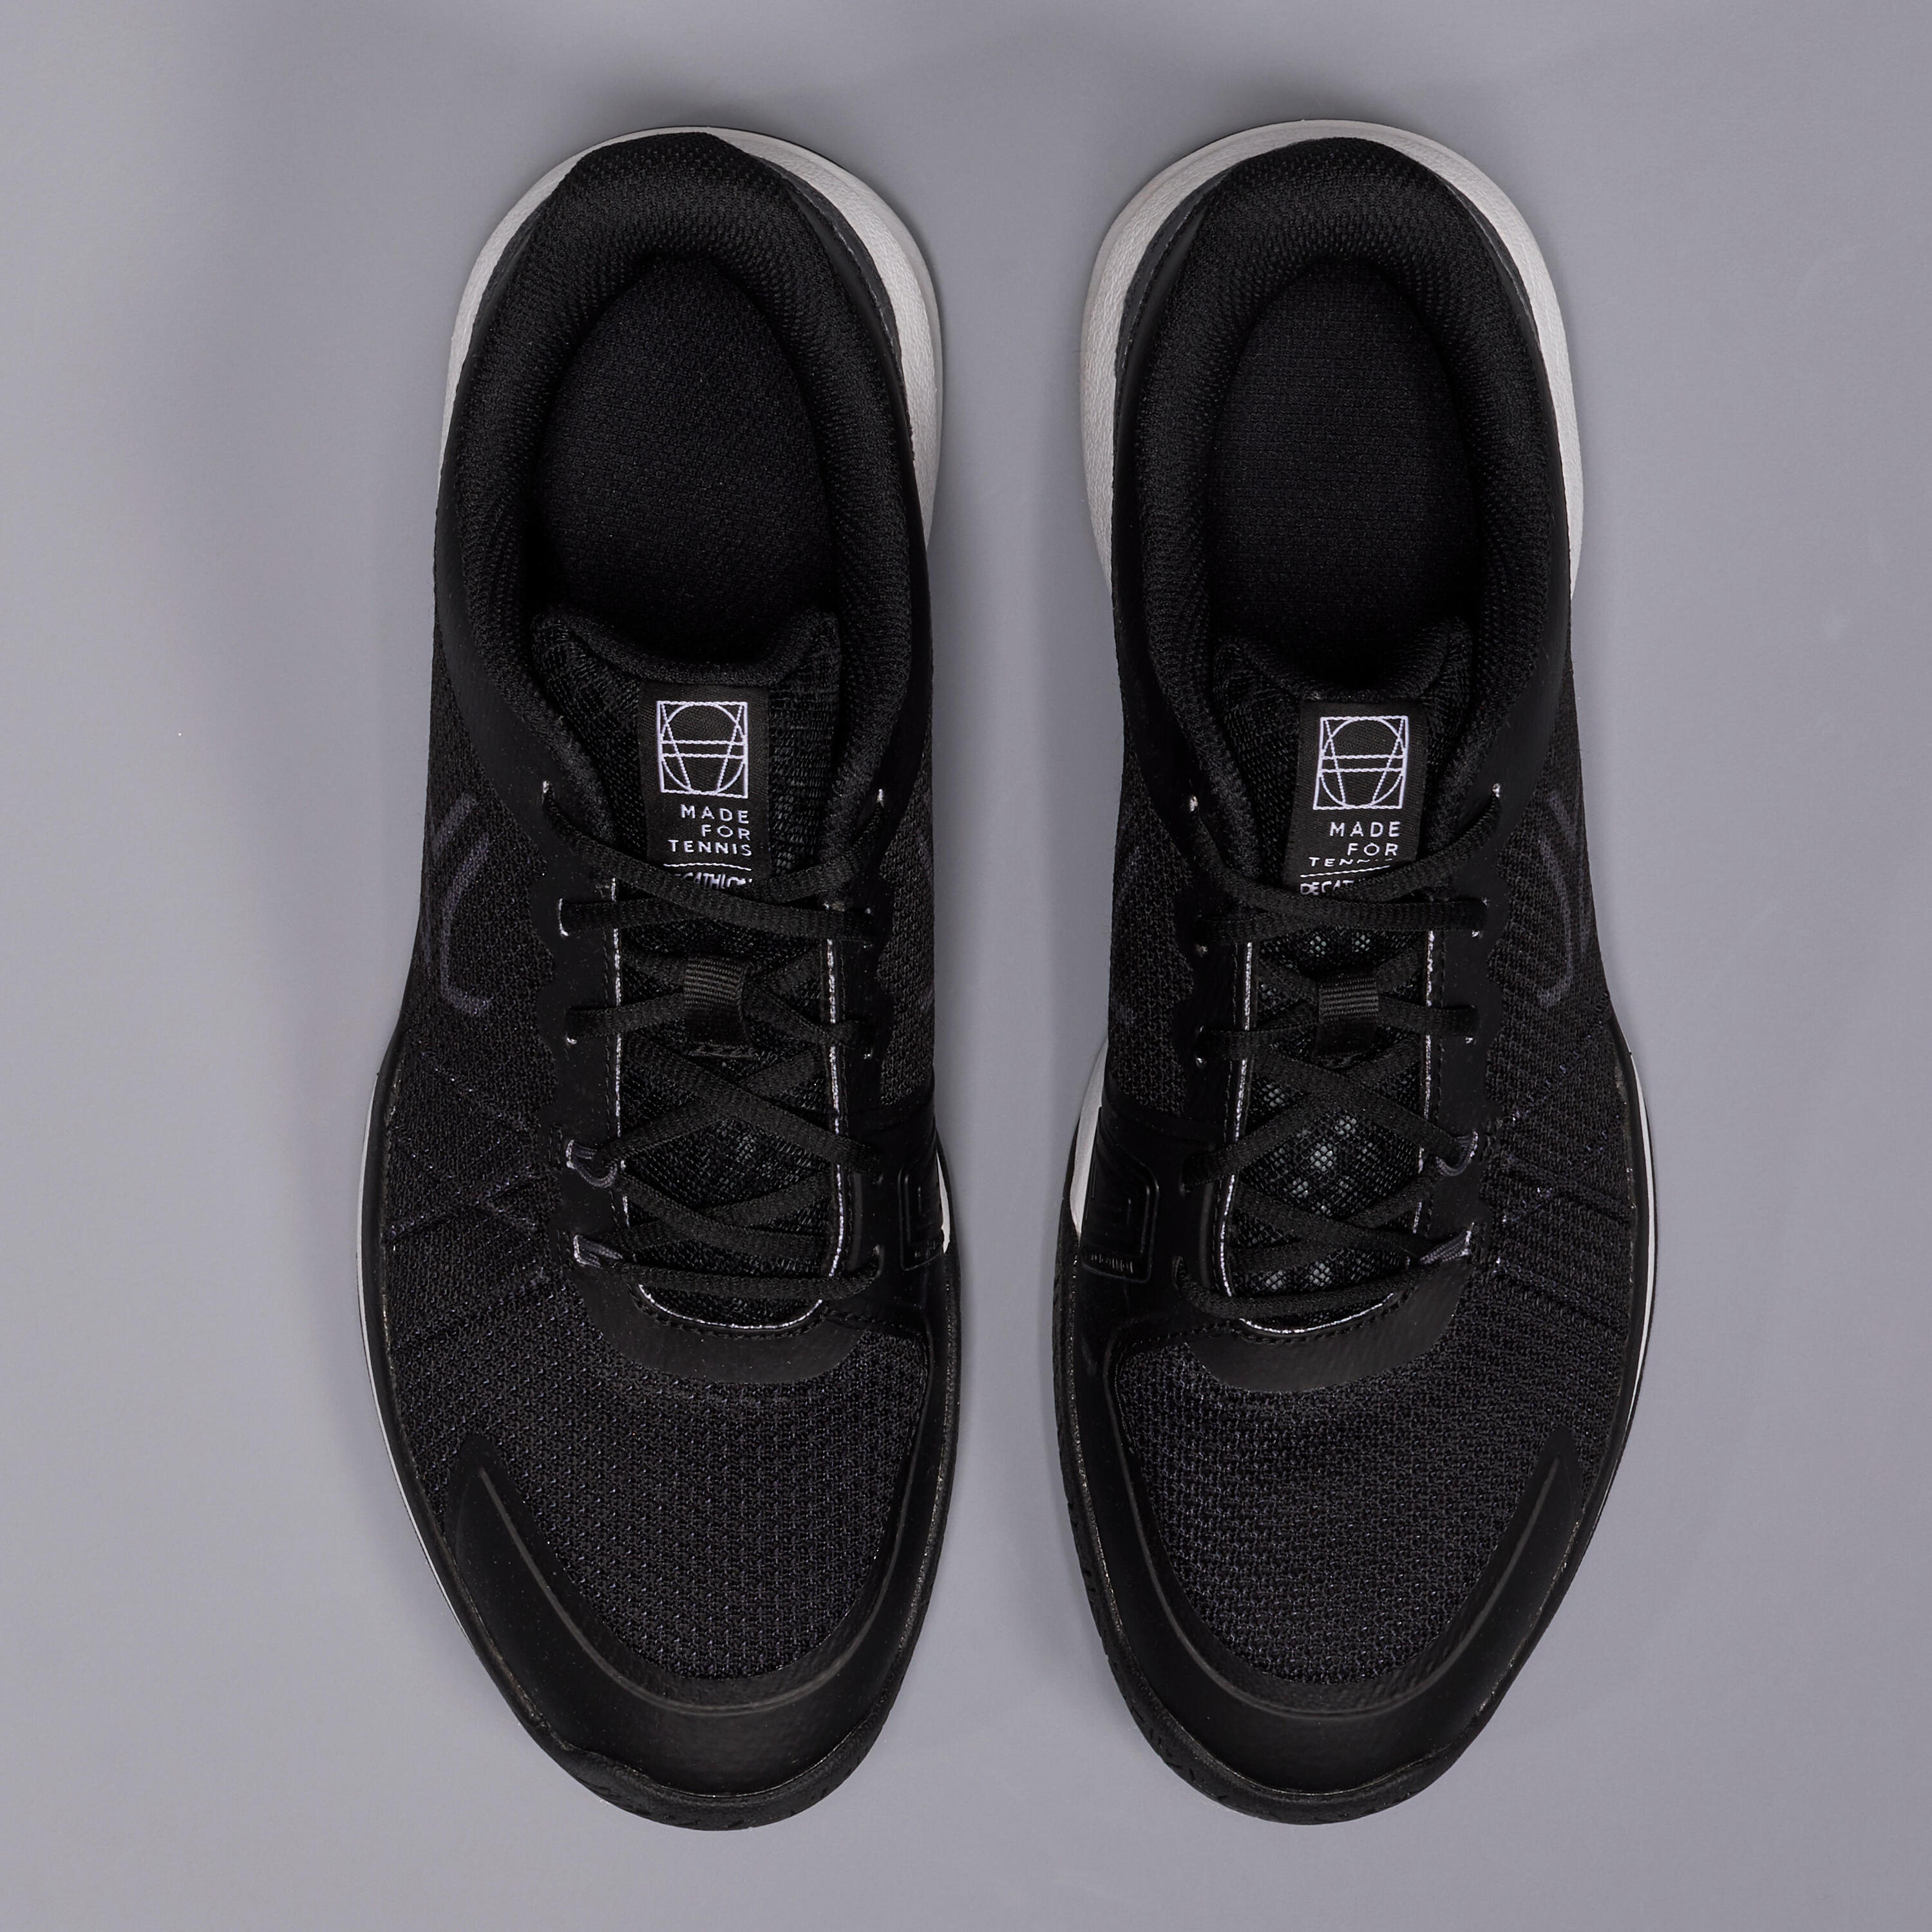 TS590 Multicourt Tennis Shoes - Black 5/9